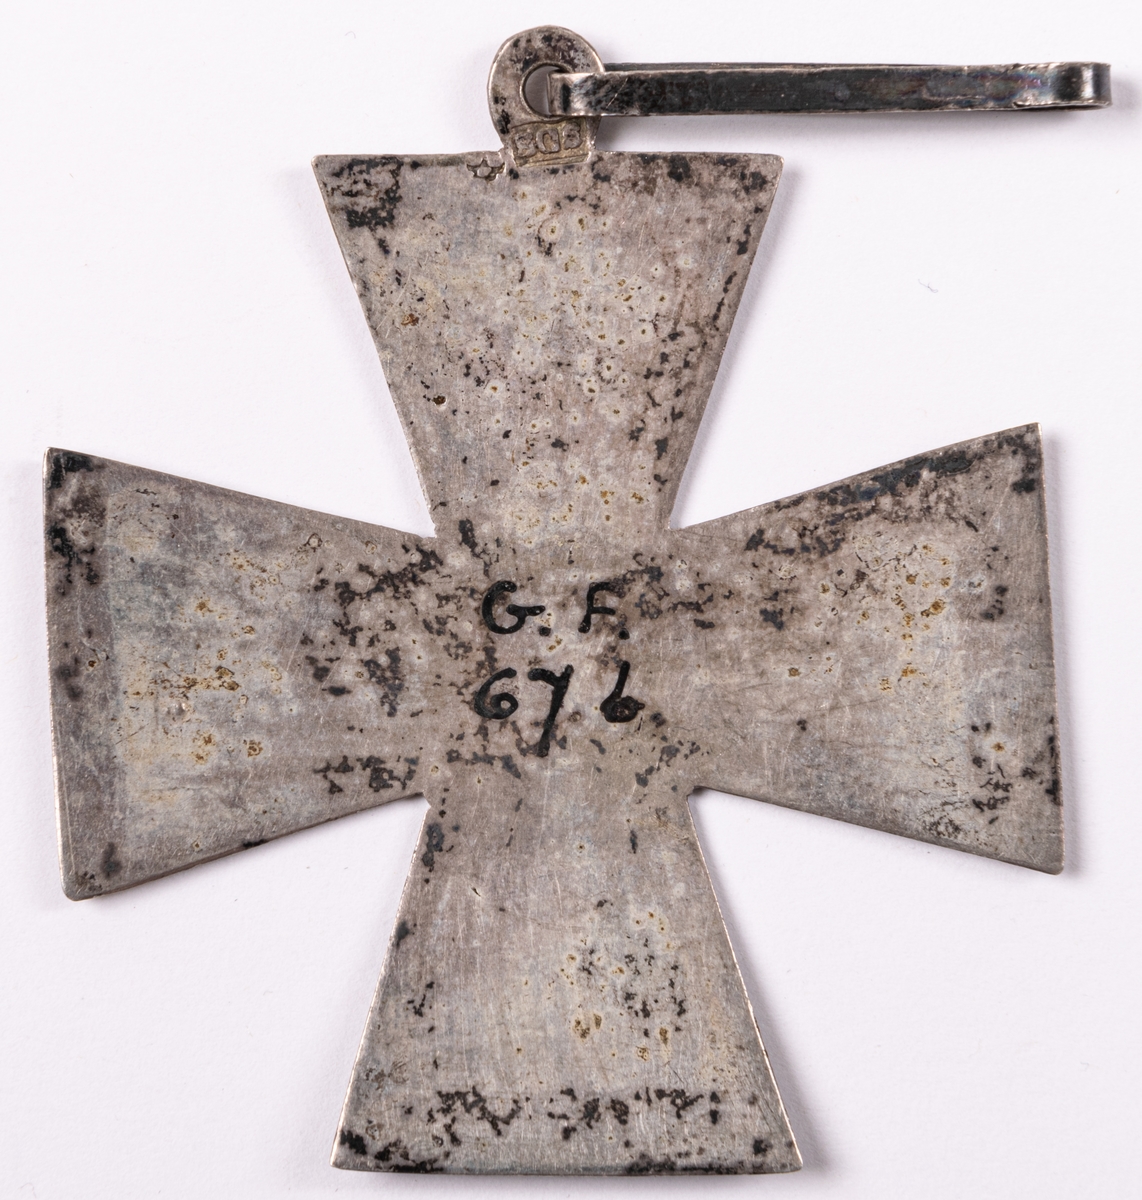 Kors för föreningen Idka Dygden.
Del av 6 stycken föreningestecken i silver, två korsformiga, 4 runda.